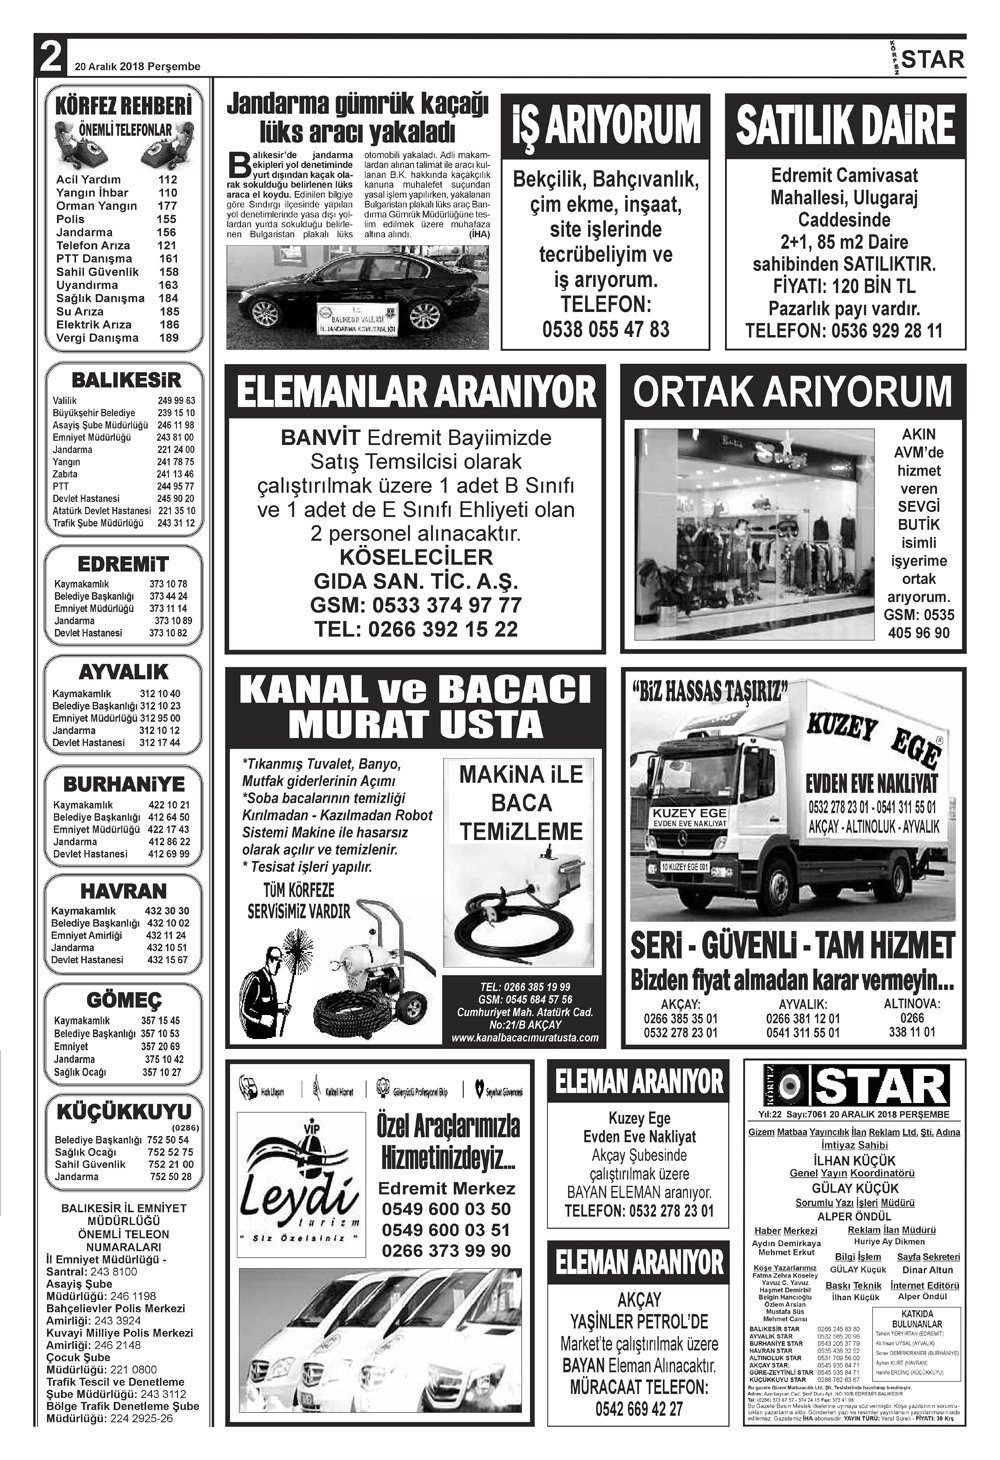 20122018-tarihli-gazetemiz-1818-12-20072440.jpg